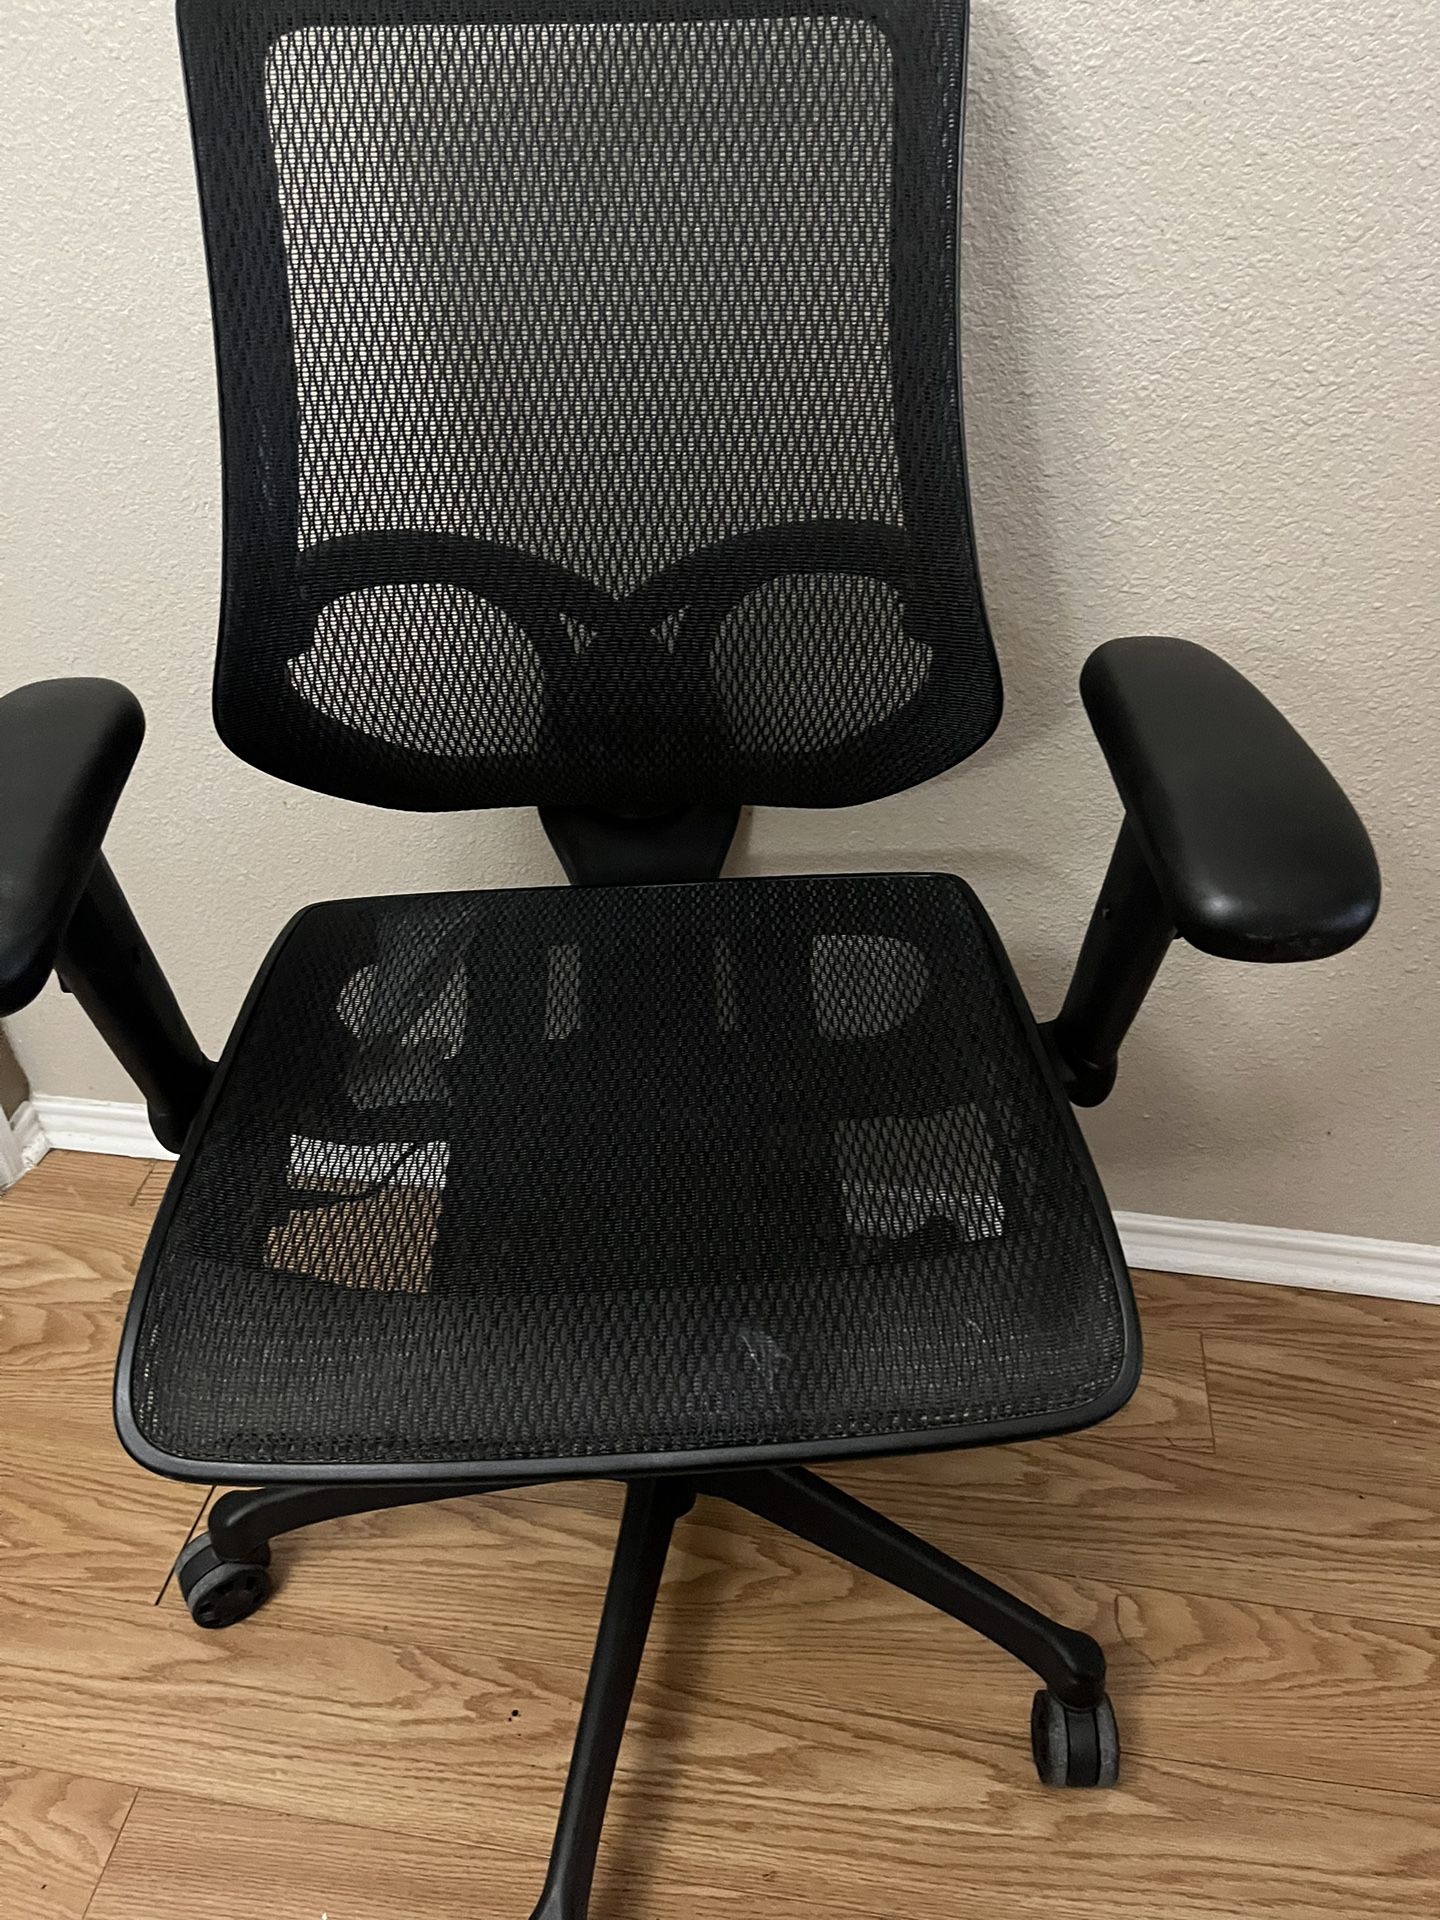 Ergonomic Mesh Back Office Chair!